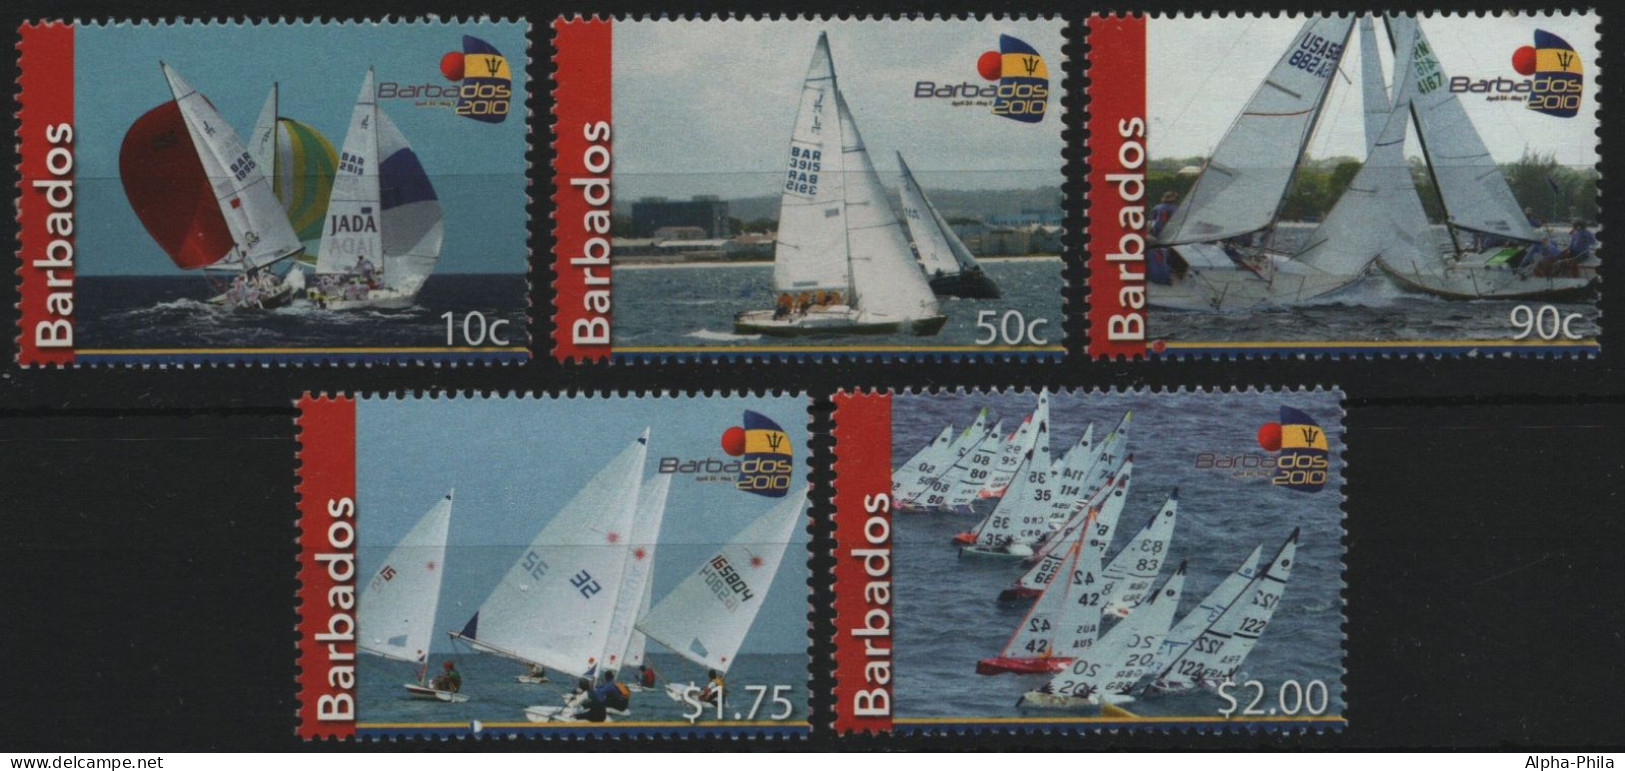 Barbados 2010 - Mi-Nr. 1178-1182 ** - MNH - Segelboote / Sail Boats - Barbades (1966-...)